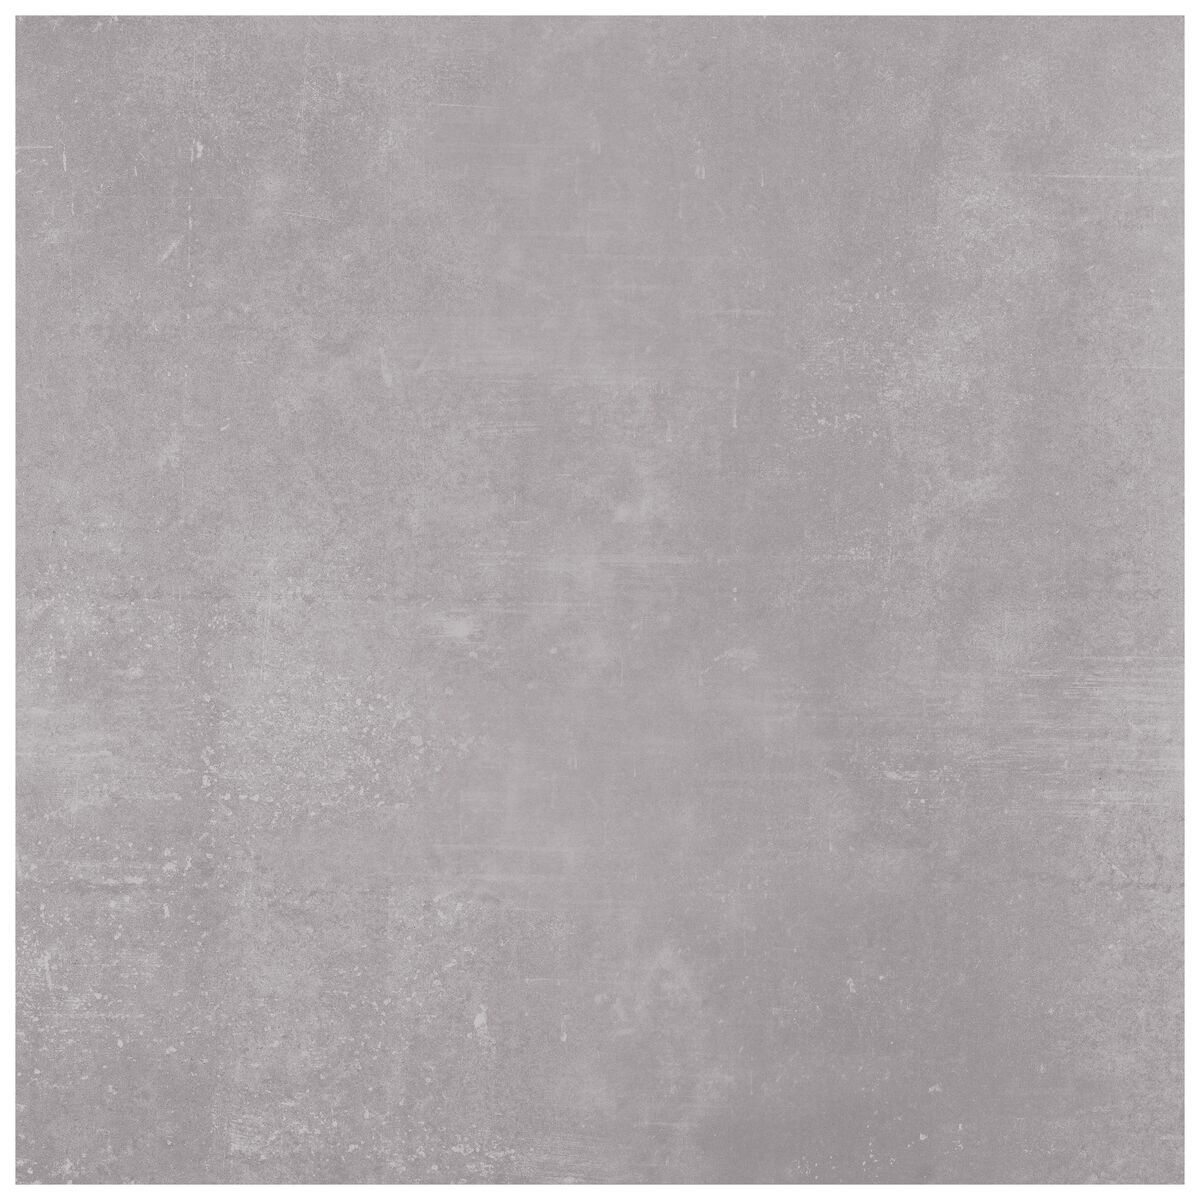 Terrastegel 60 x 60 cm Urban Grey 2 cm